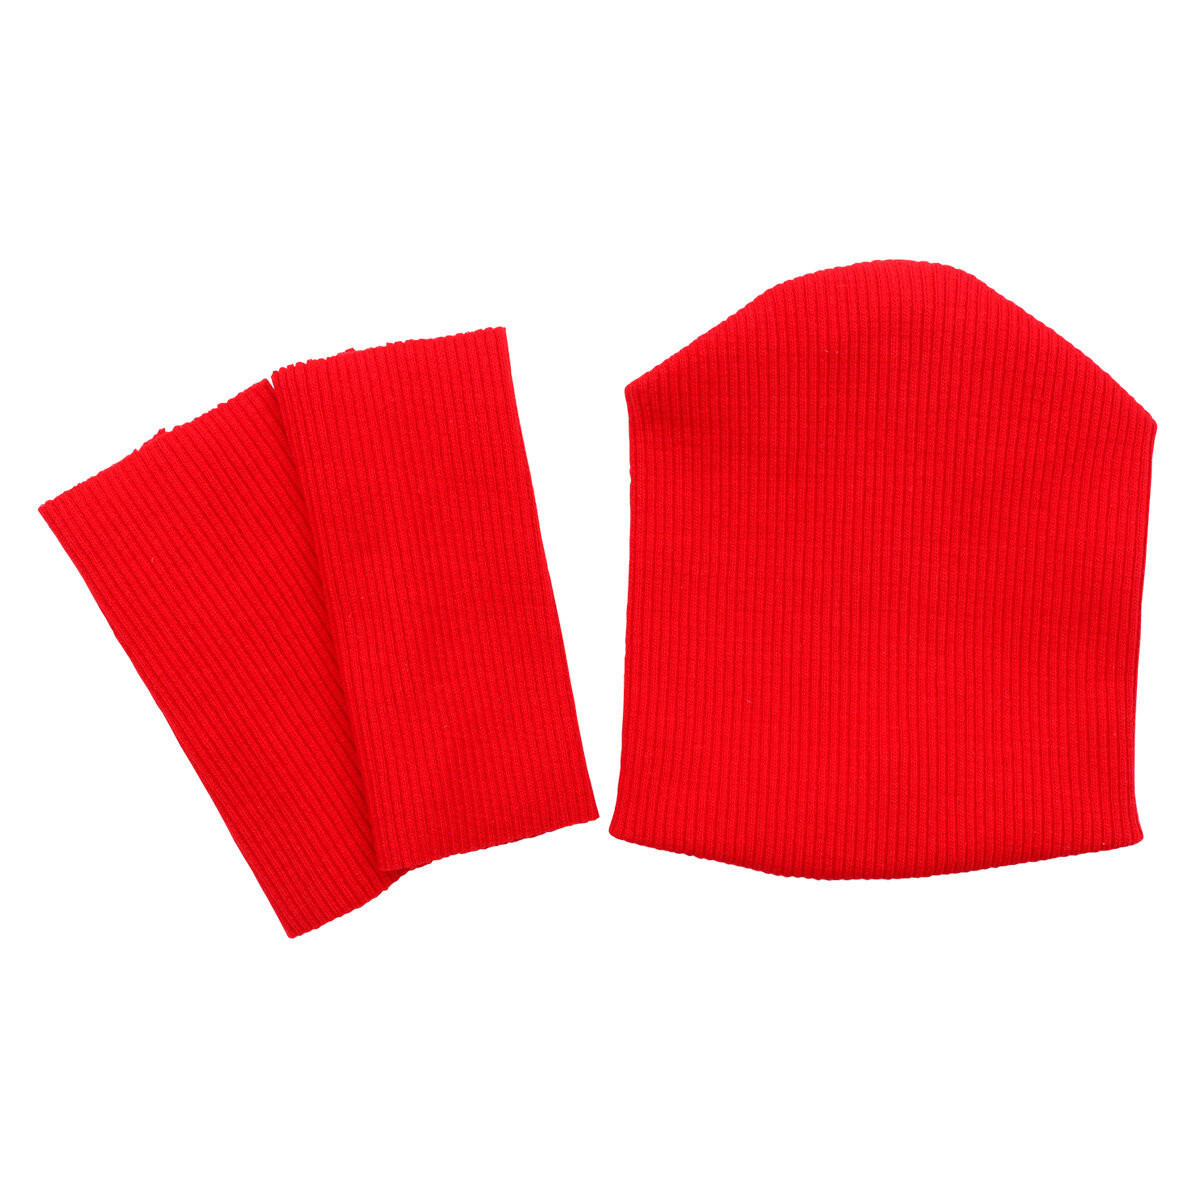 28875 Комплект одежды для игрушек, красный, (шапка 9,5*10 см, гетры 3*8 см)